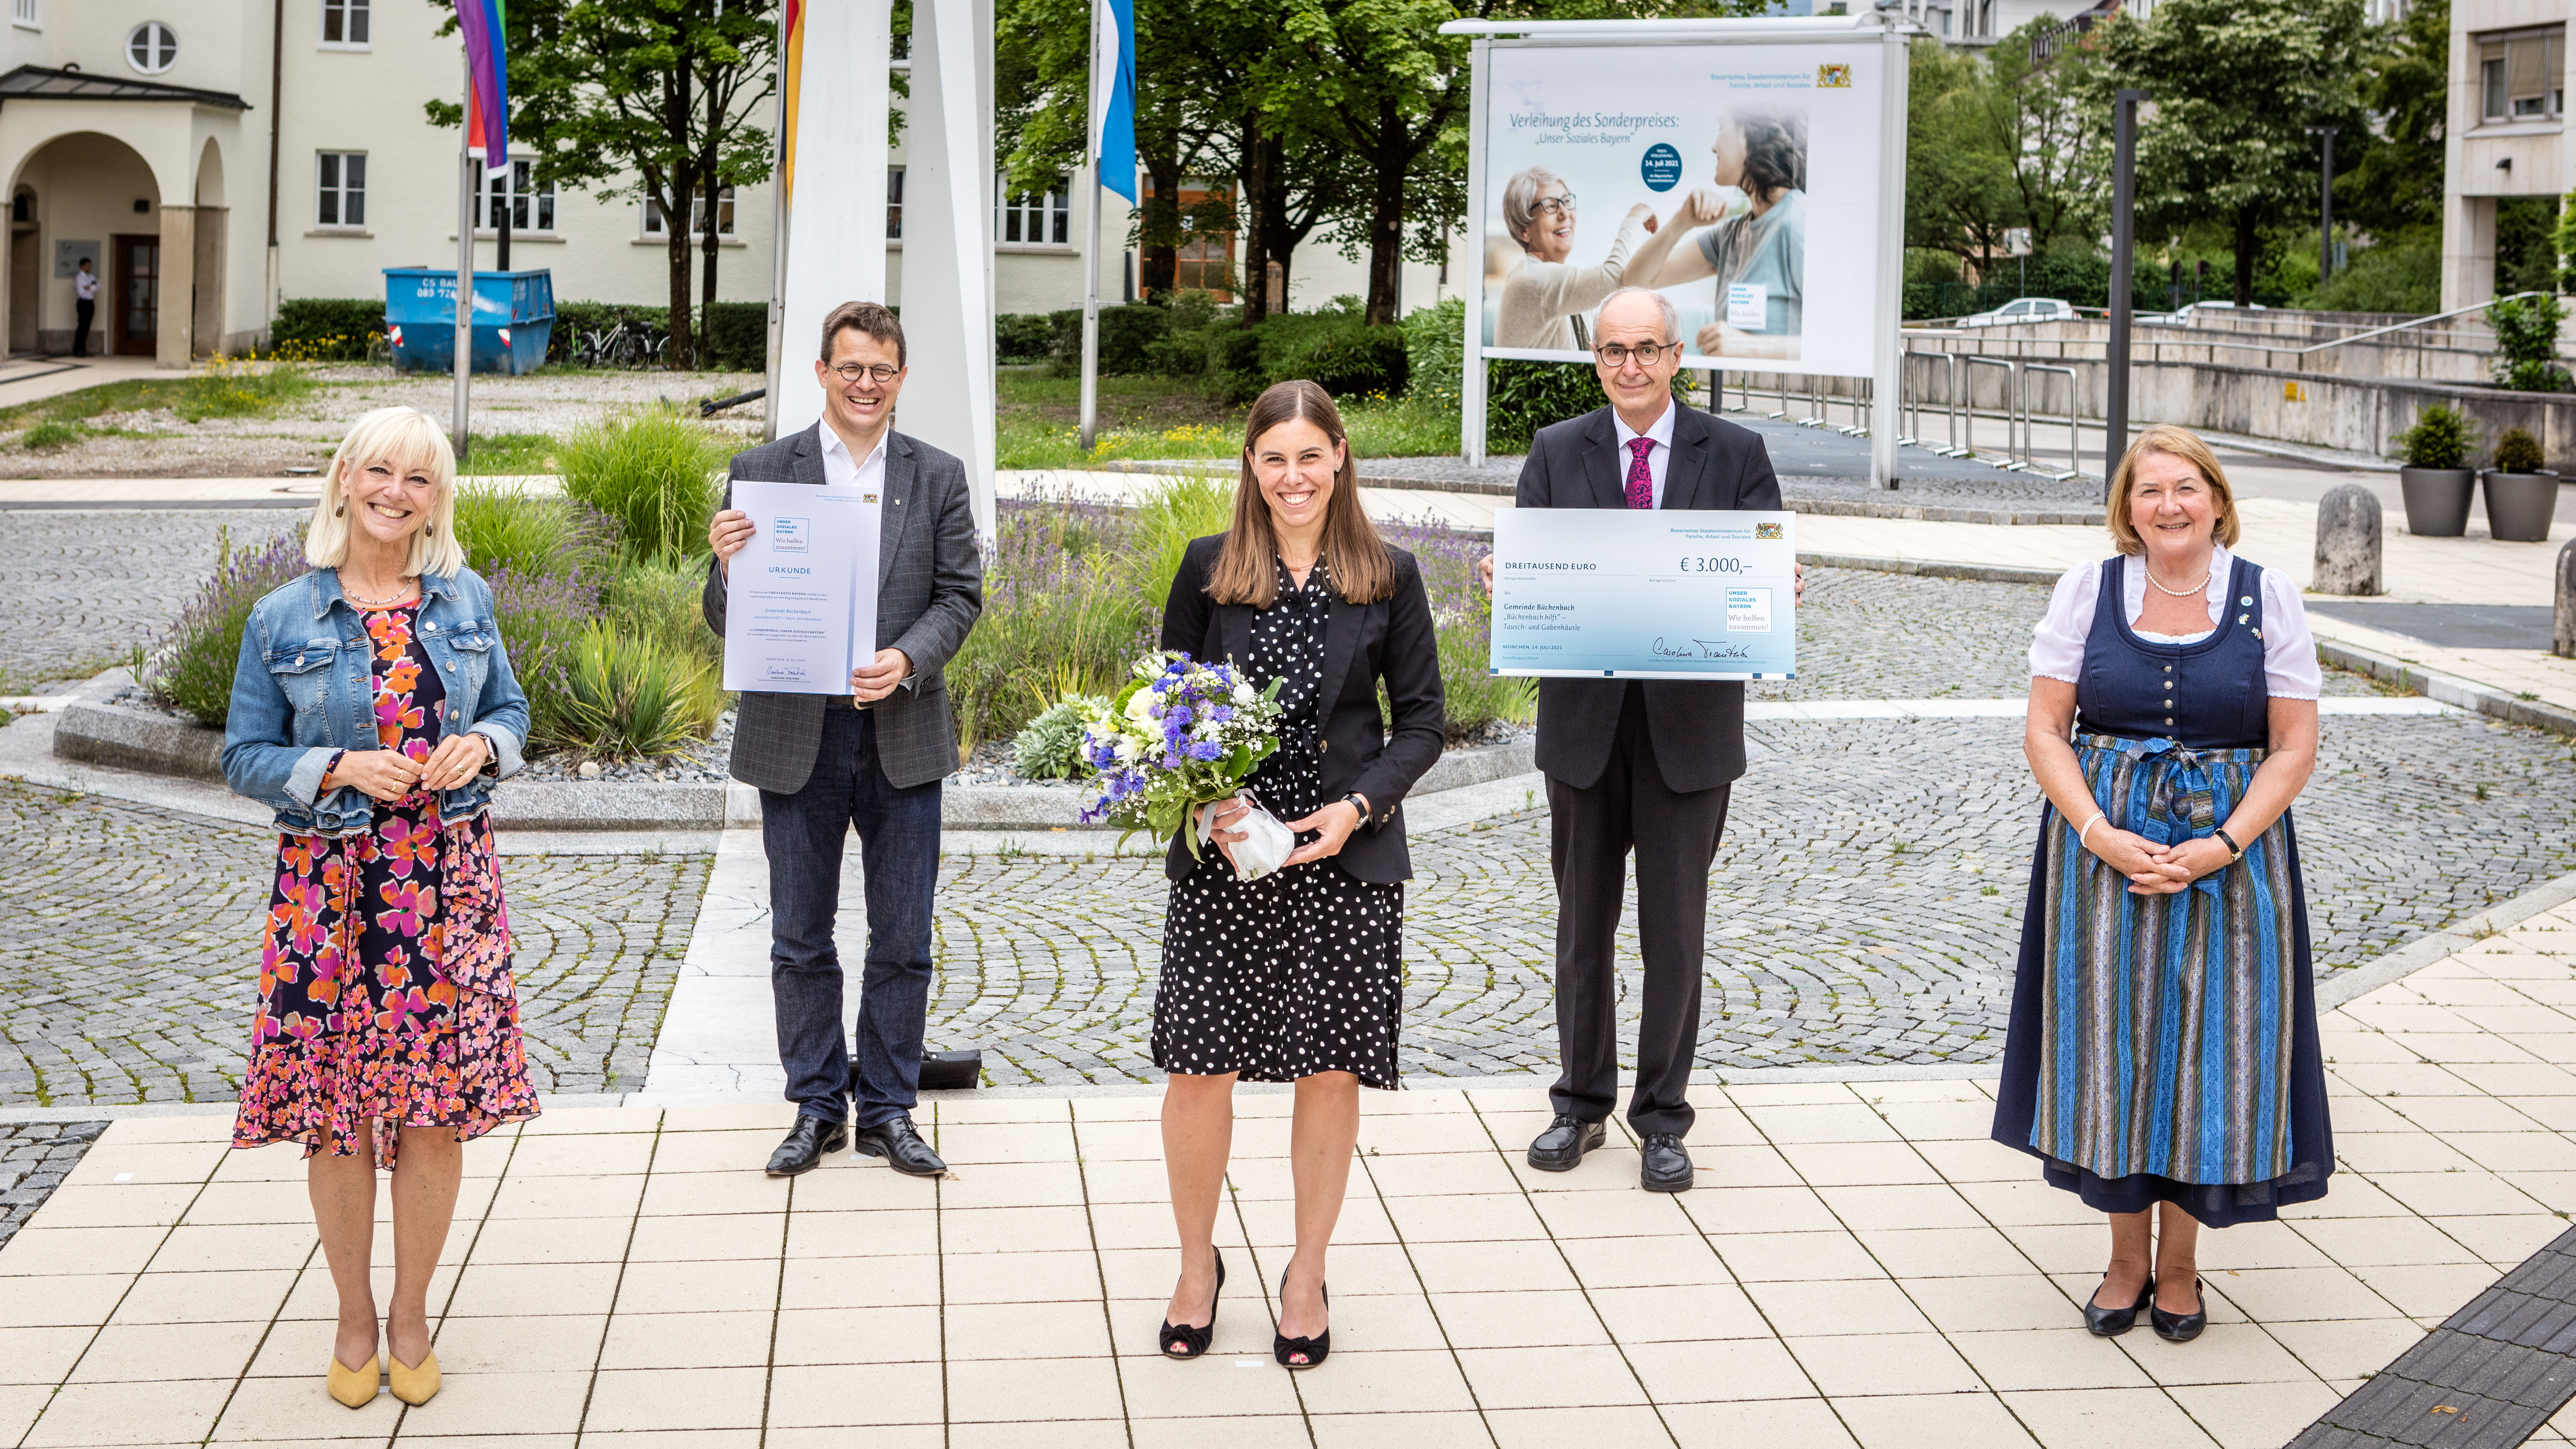 Die ehemalige Staatsministerin Carolina Trautner steht neben vier Preisträgerinnen und Preisträgern des Gewinnerprojekts „Büchenbach hilft“ der Gemeinde Büchenbach. Sie halten eine Urkunde, einen Scheck und einen Blumenstrauß in den Händen.